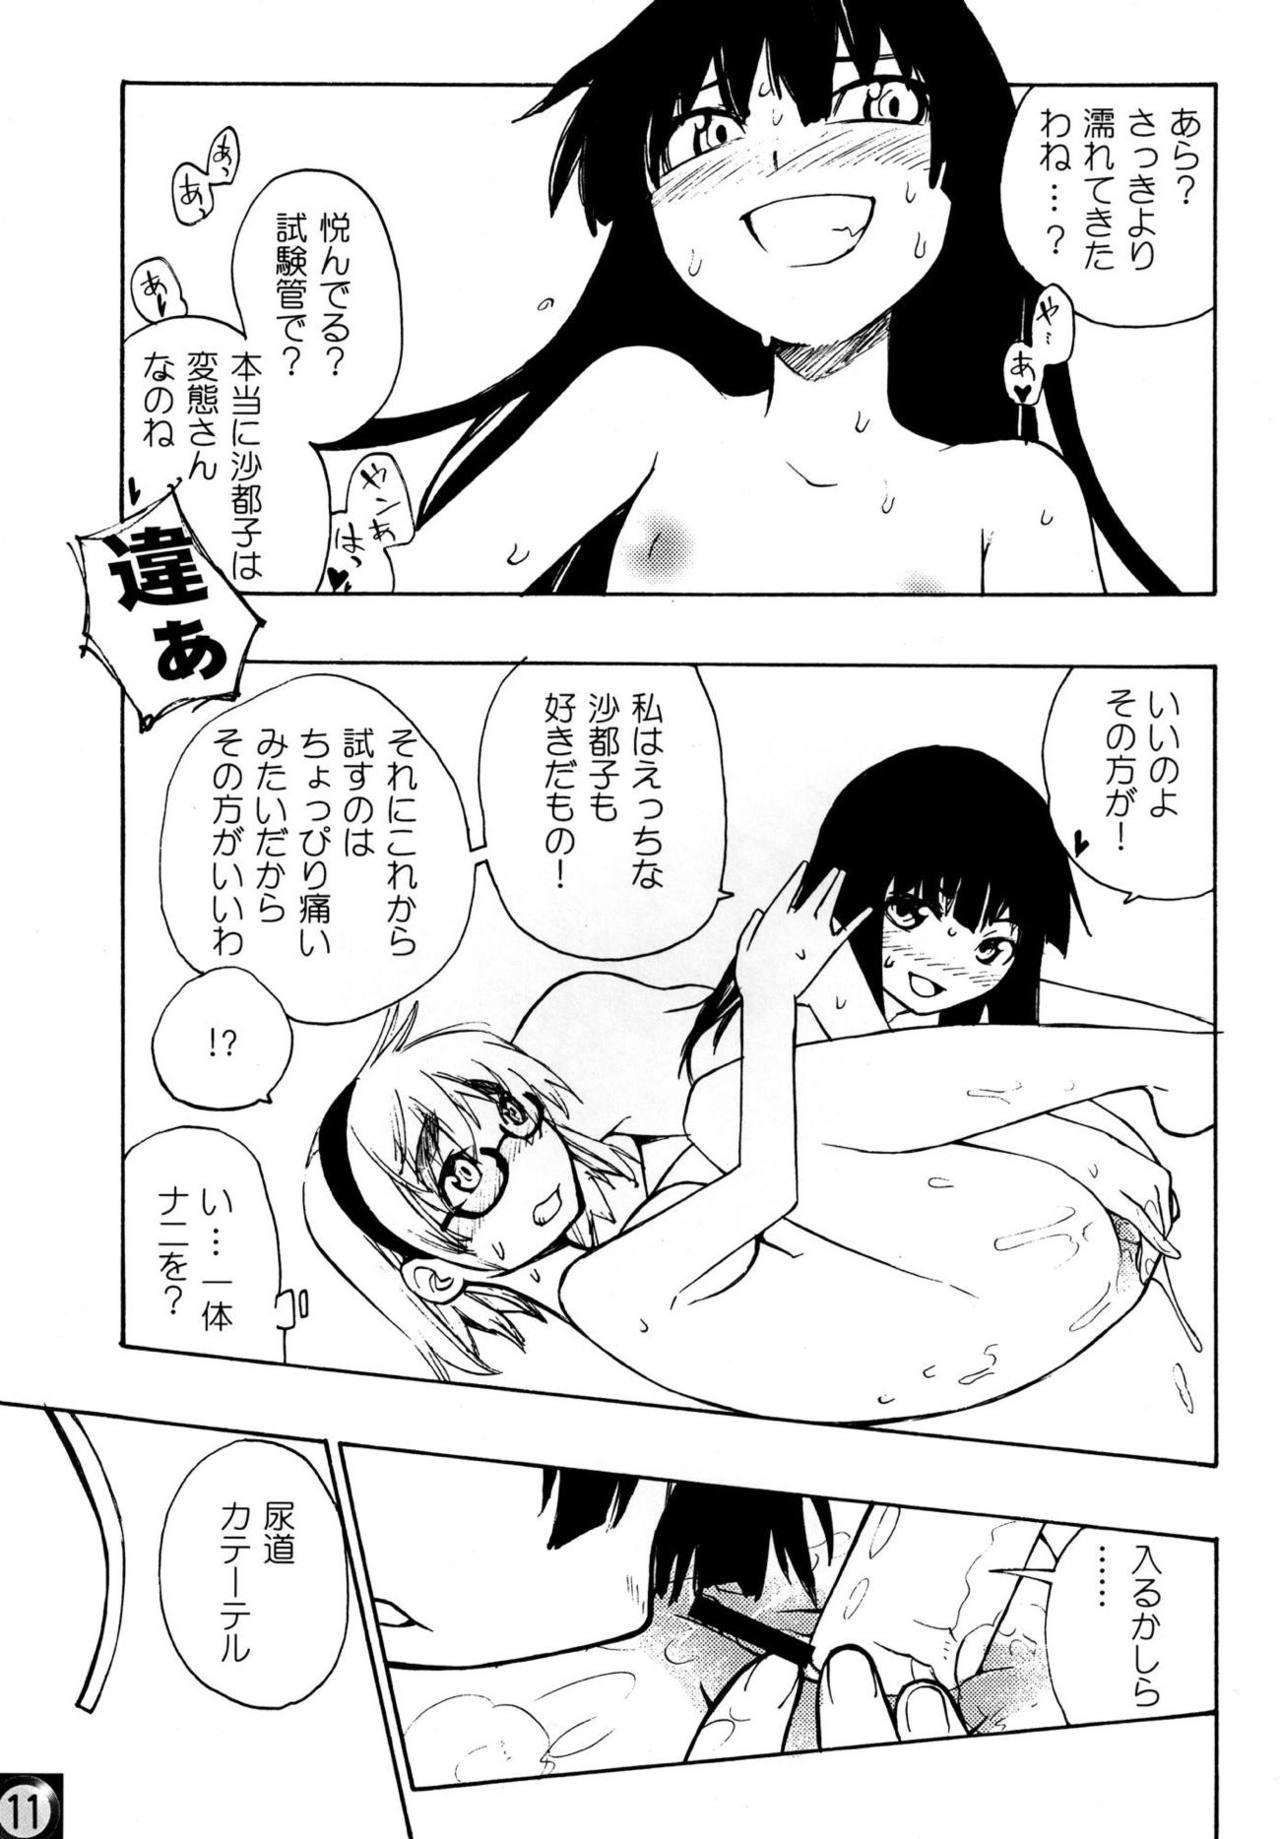 Anal Licking Ecchi ja Nai to Ikenai to Omoimasu!! - Higurashi no naku koro ni Tall - Page 10